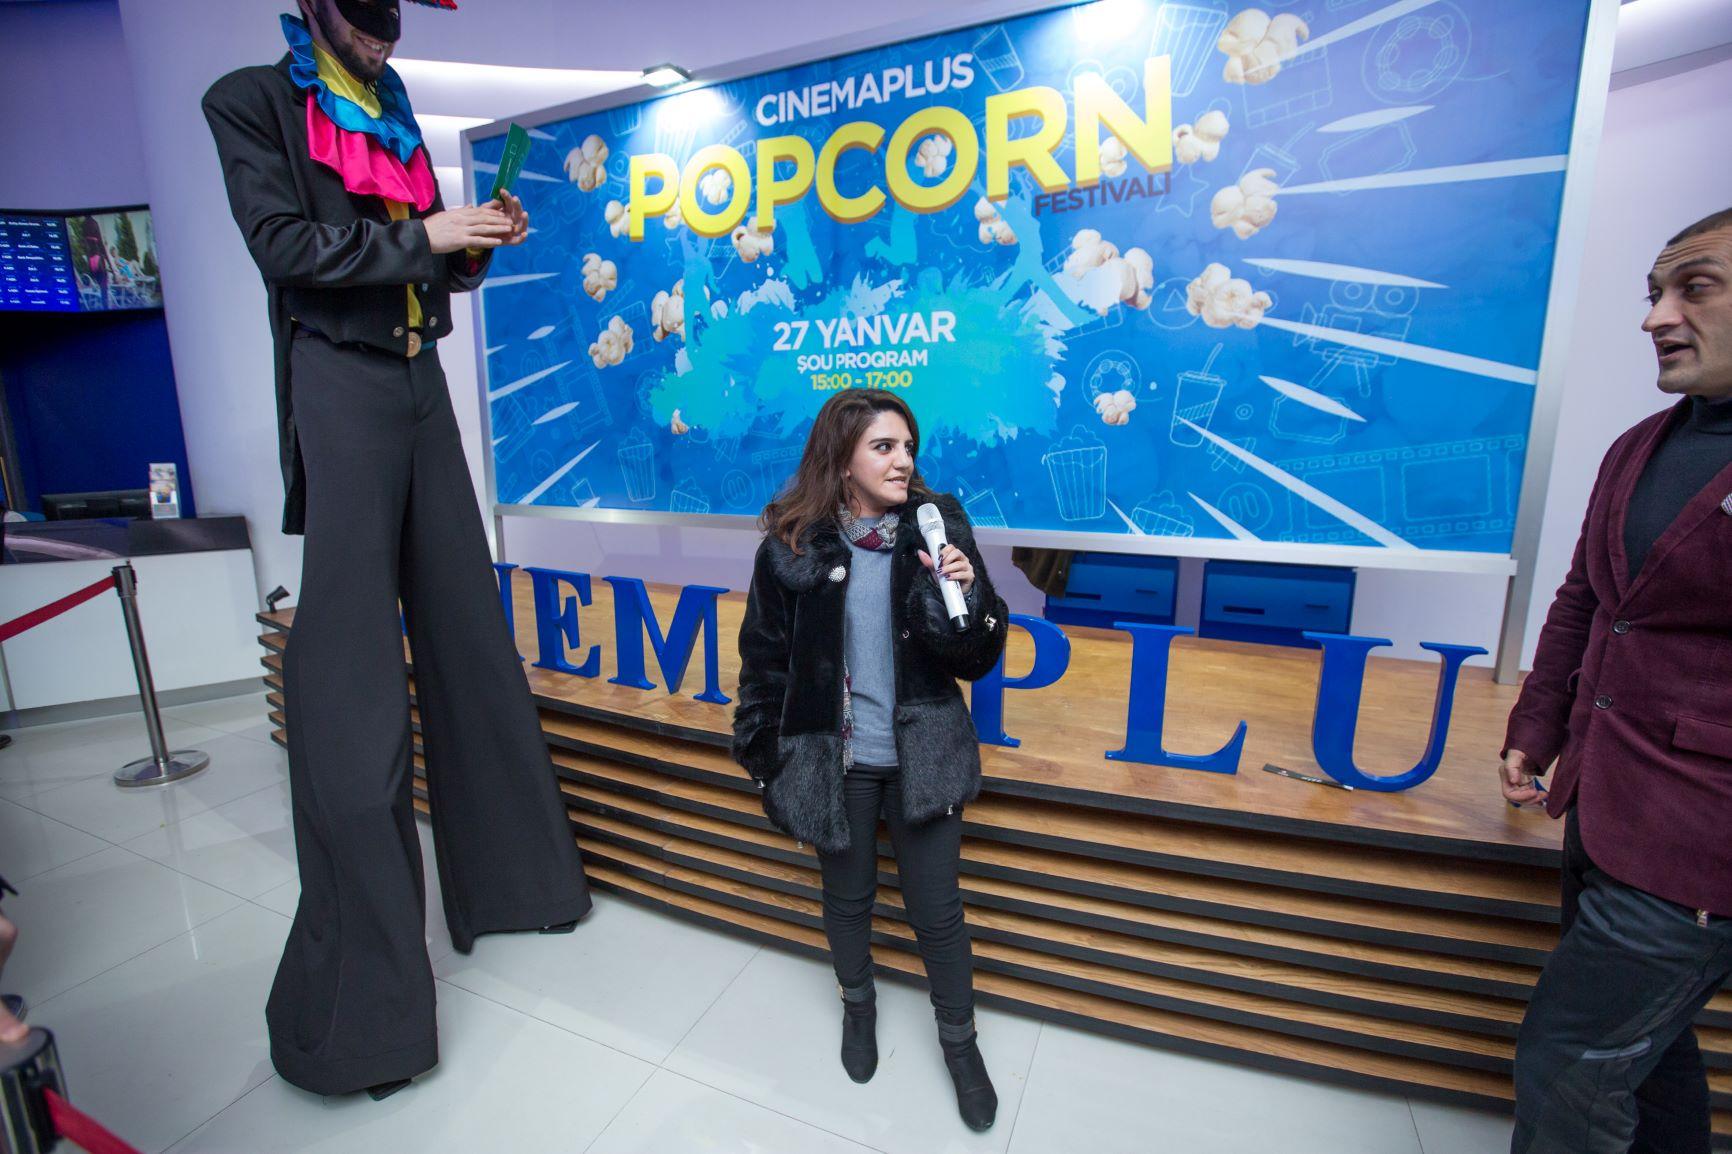 В Баку прошел оригинальный  Фестиваль попкорна (ВИДЕО, ФОТО)